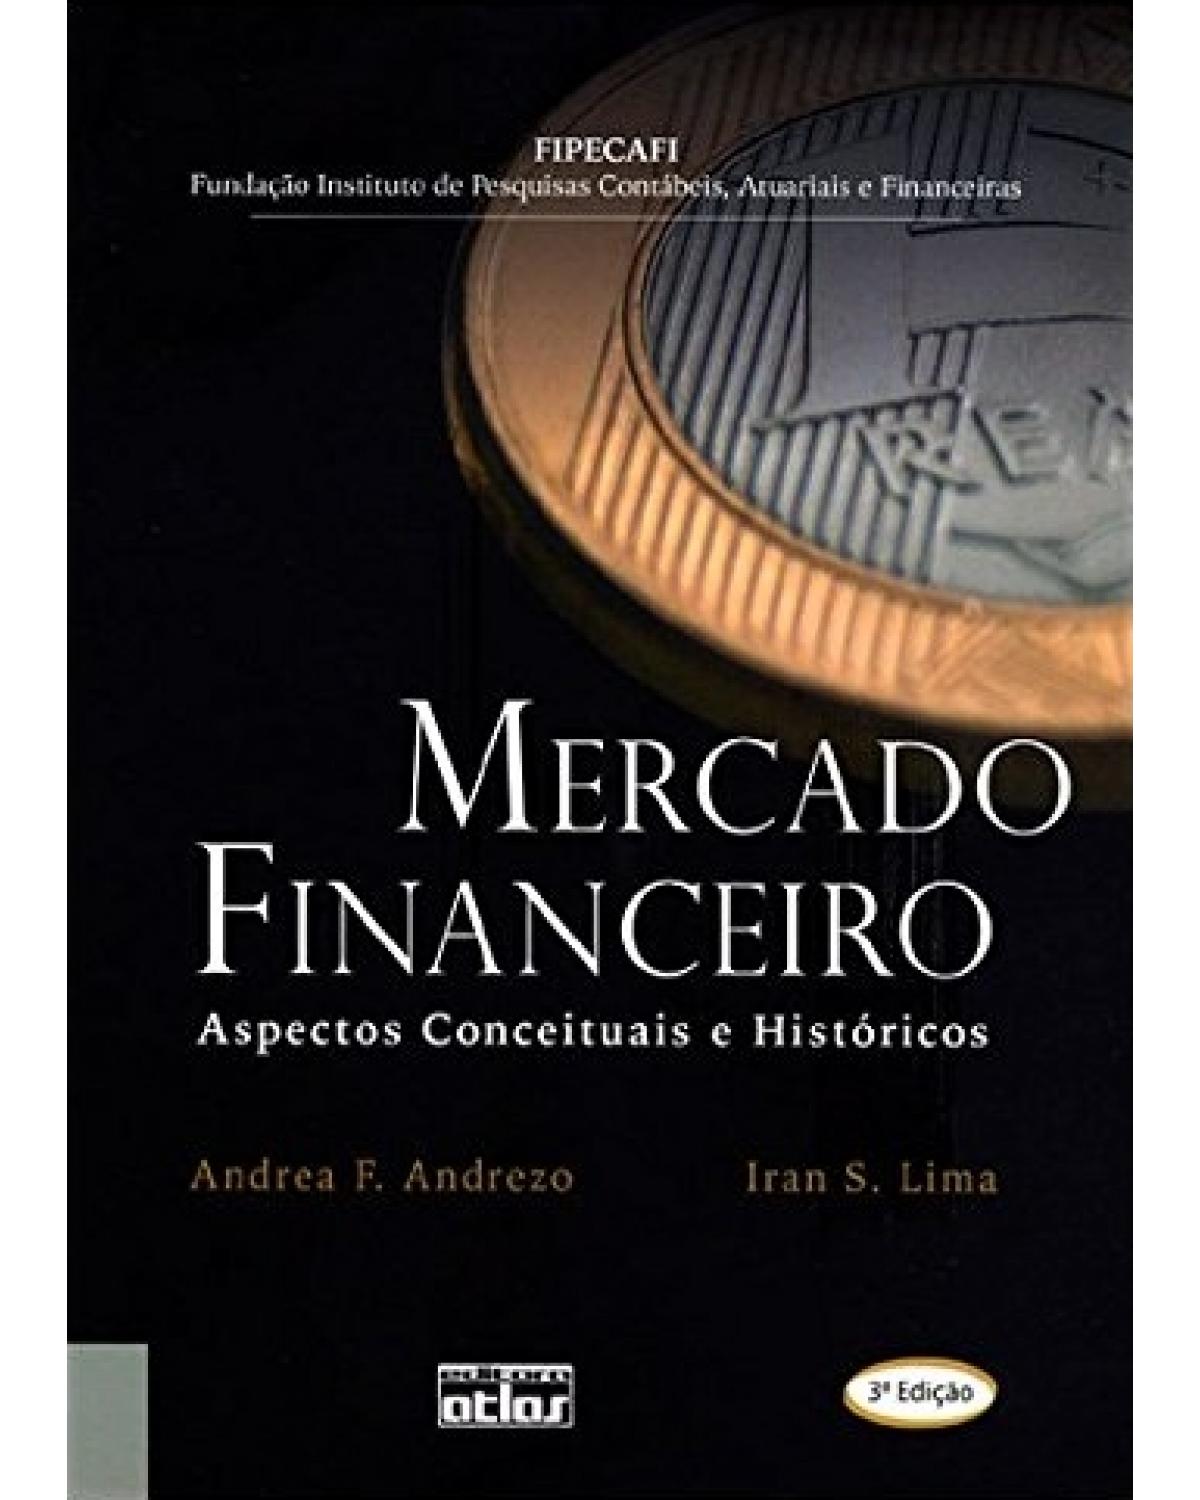 Mercado financeiro - Aspectos conceituais e históricos - 3ª Edição | 2007